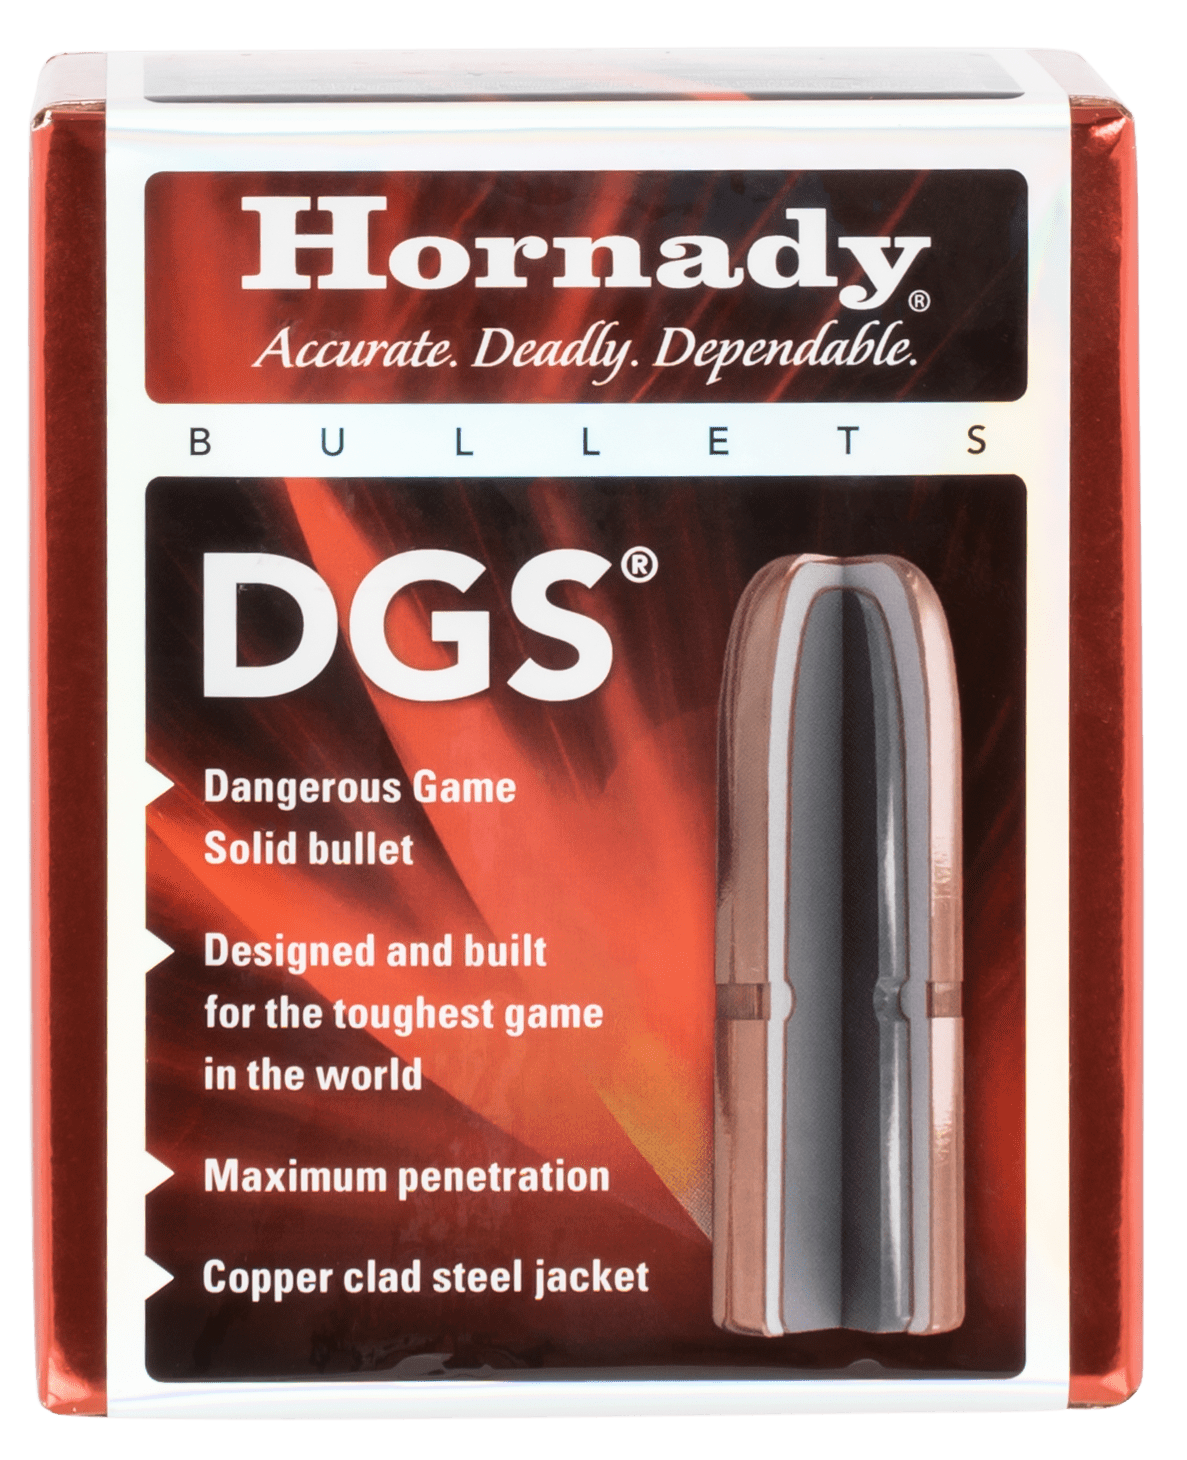 Hornady Hornady Dgs, Horn 4507   Bull .458 500 Rn Fmj             50/15 Reloading